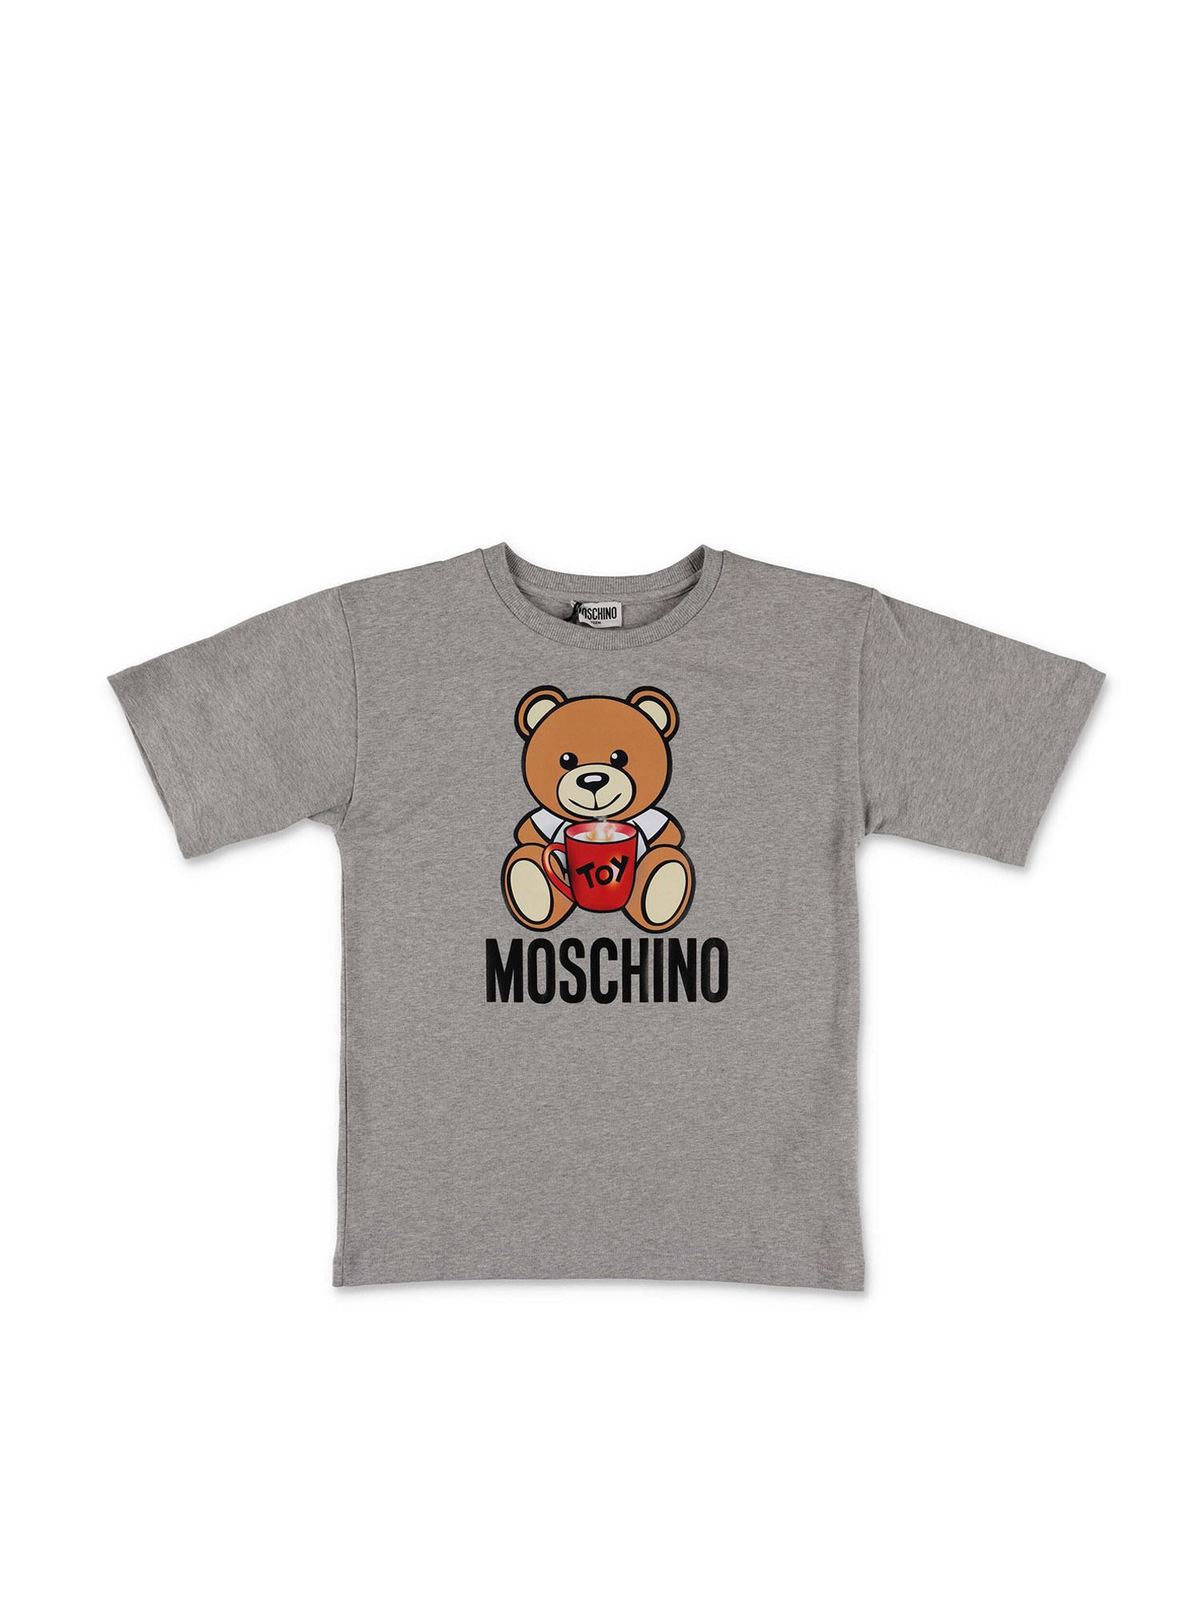 moschino kids shirt